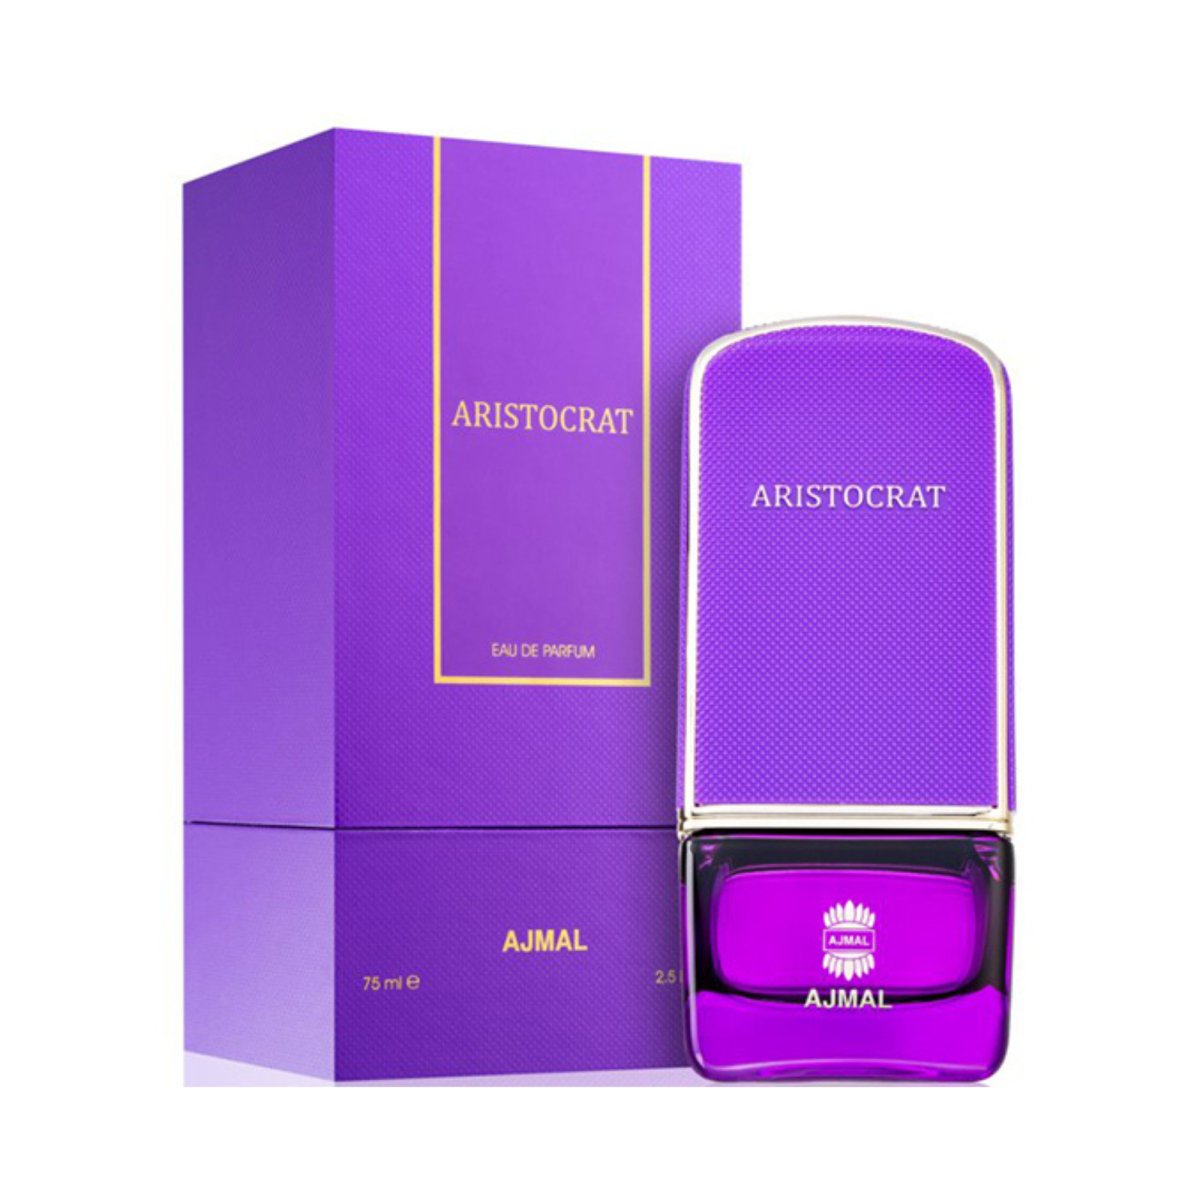  - Ajmal - 2.5 oz - Eau de Parfum - Fragrance - 6293708011124 - Fragrance